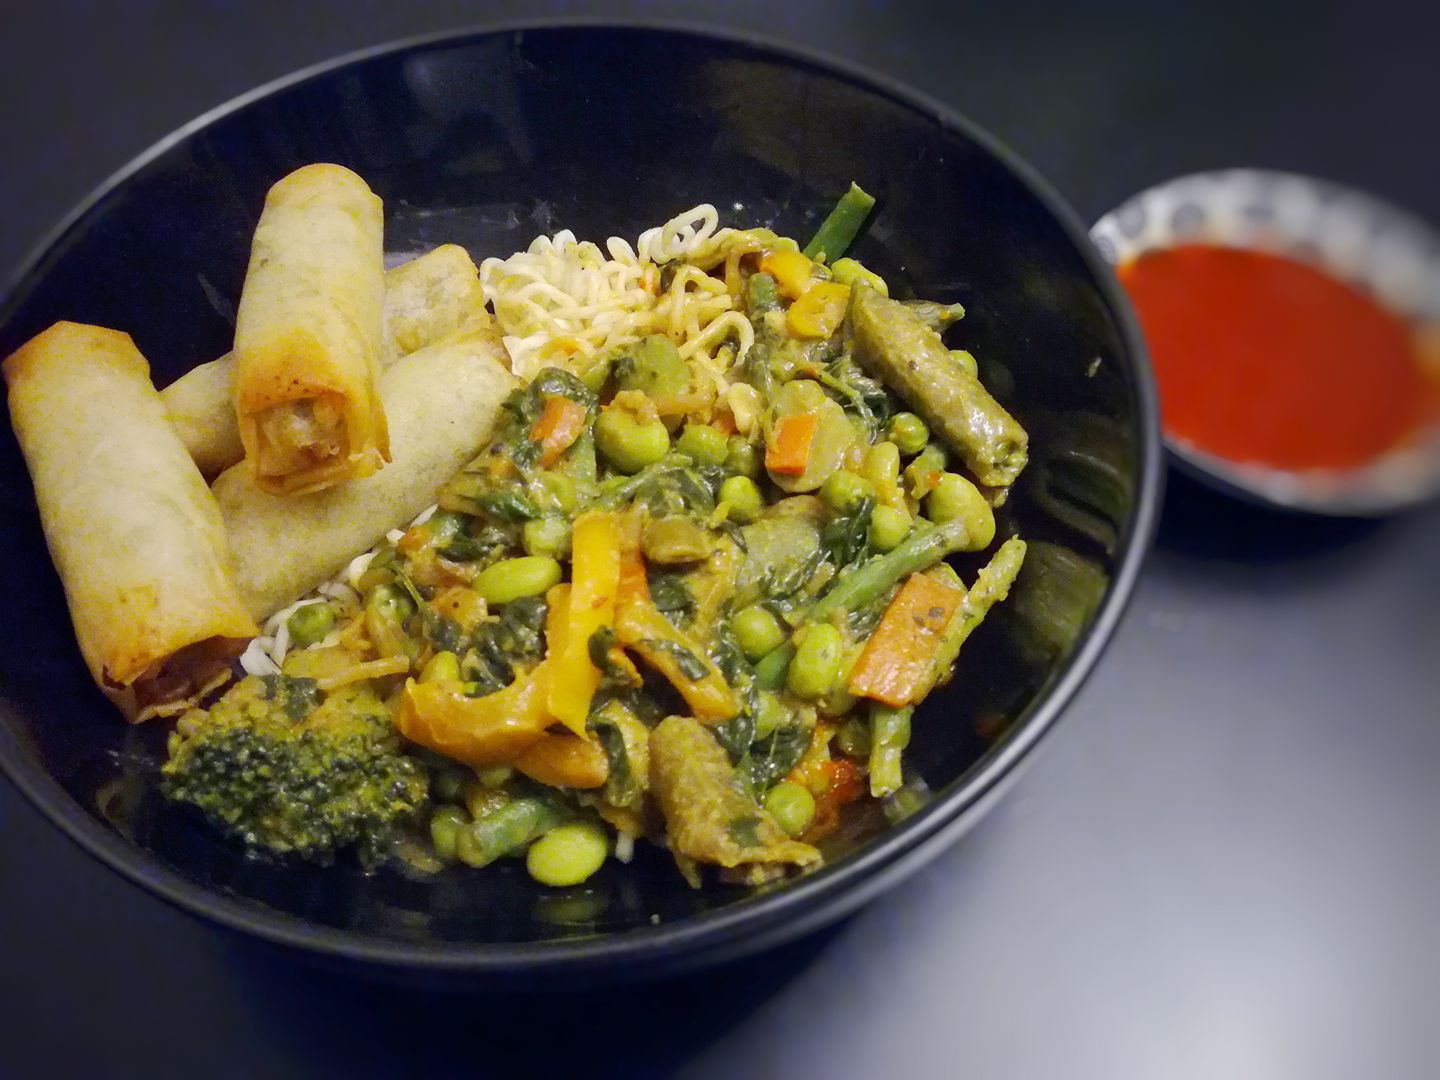 Repas végétalien inspiration asiatique Photo: Facebook Recettes Végétaliennes 